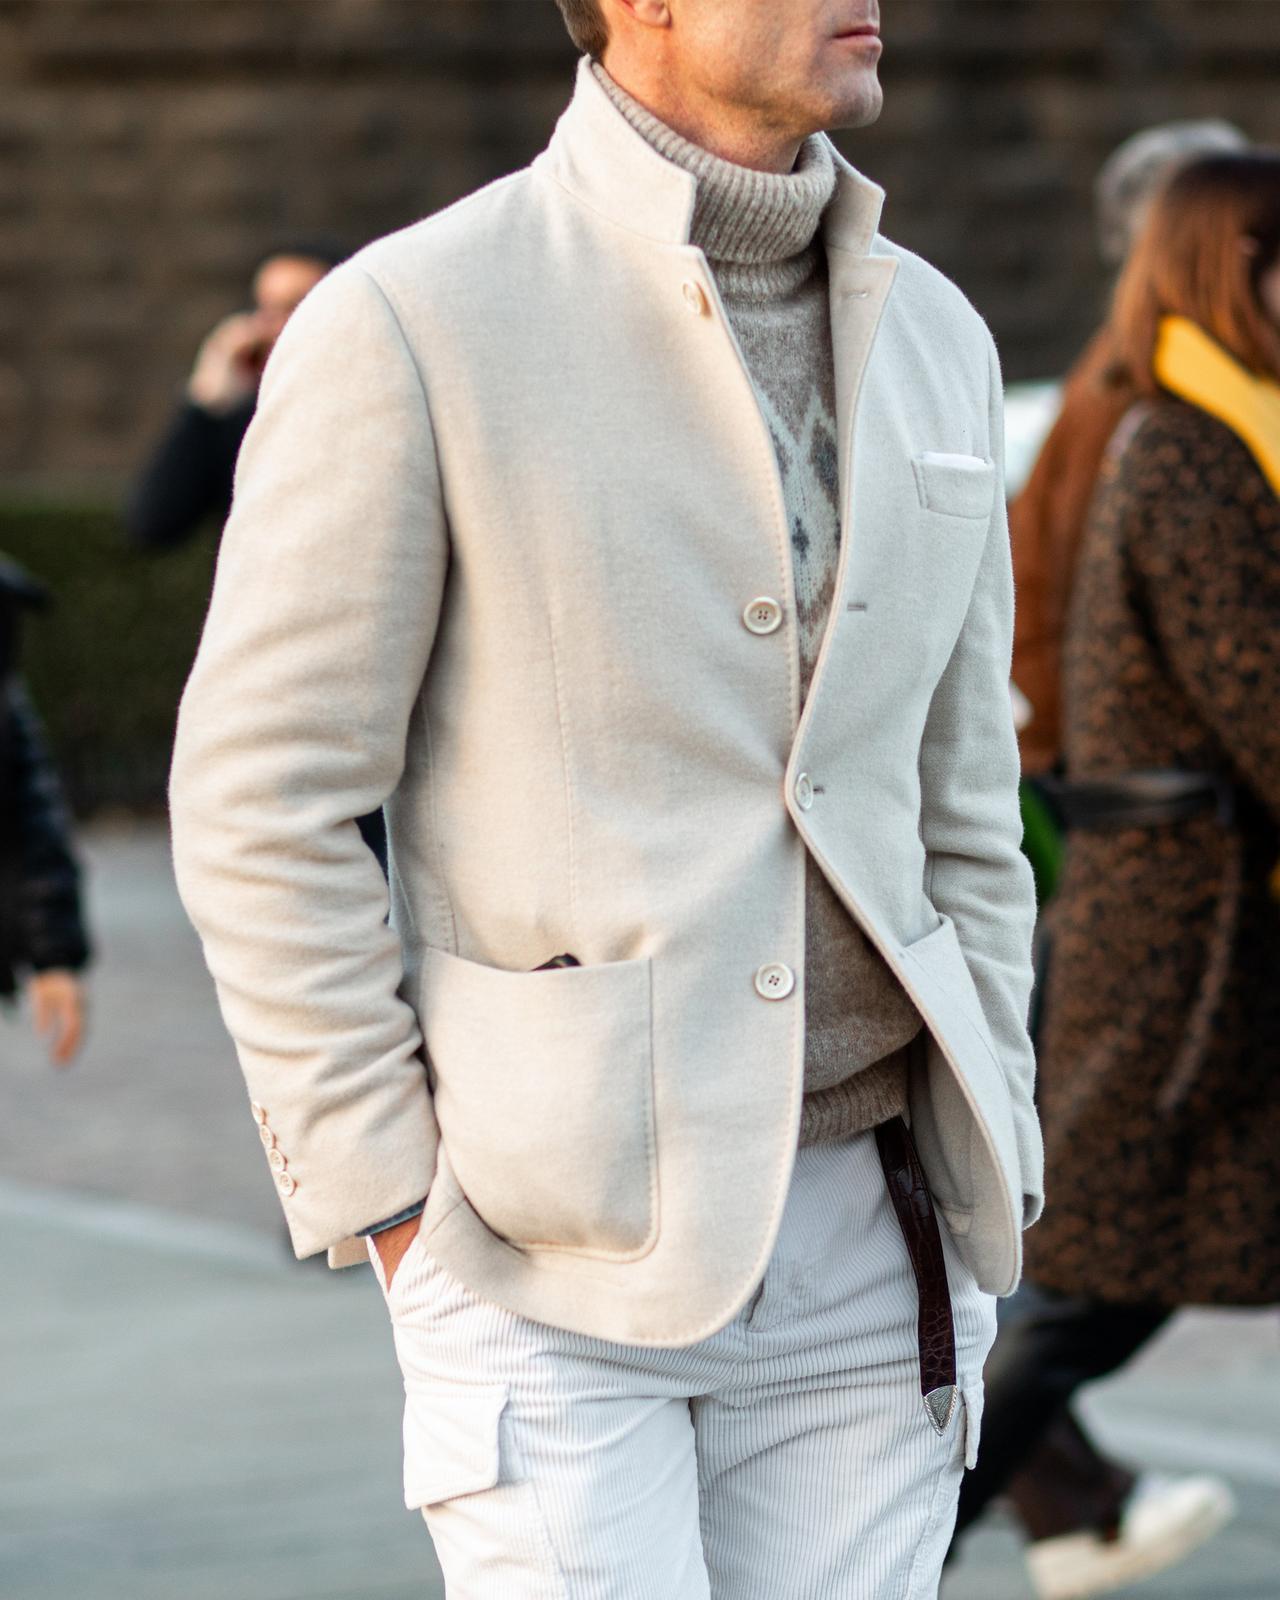 Un homme vêtu d'une veste blanche et d'un pantalon blanc marchant dans une rue